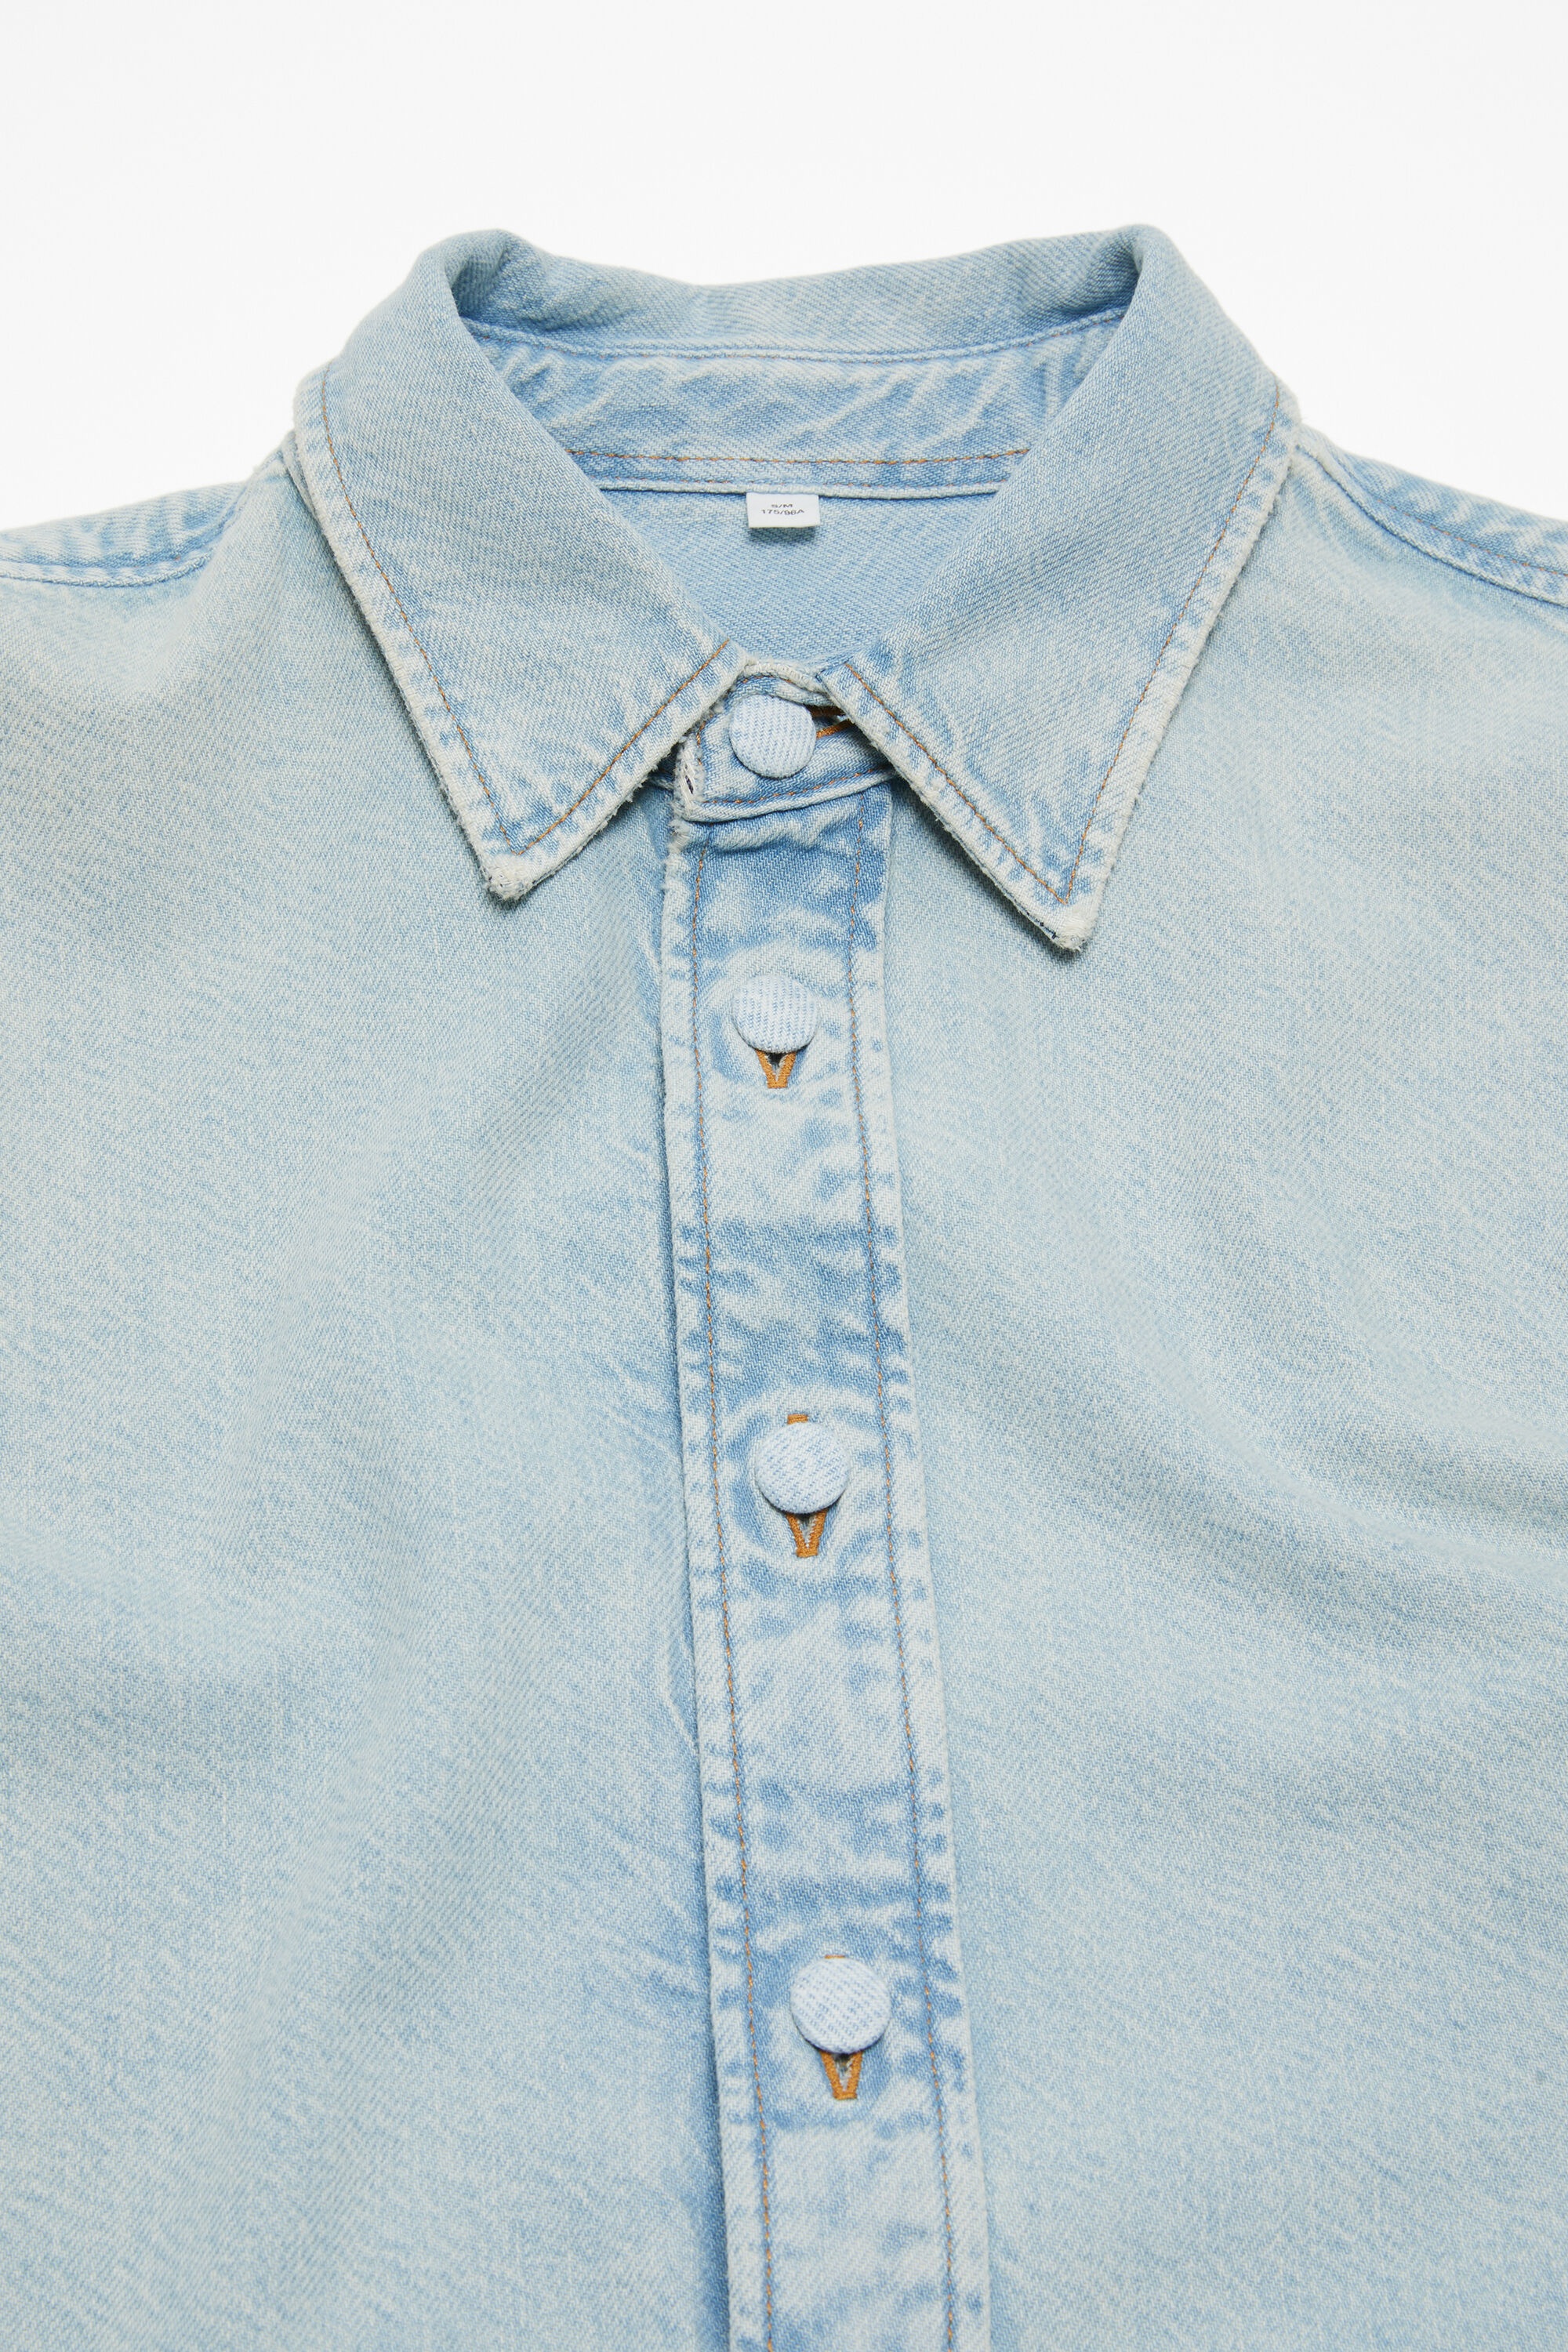 Denim button-up shirt - Relaxed fit - Indigo blue - 5